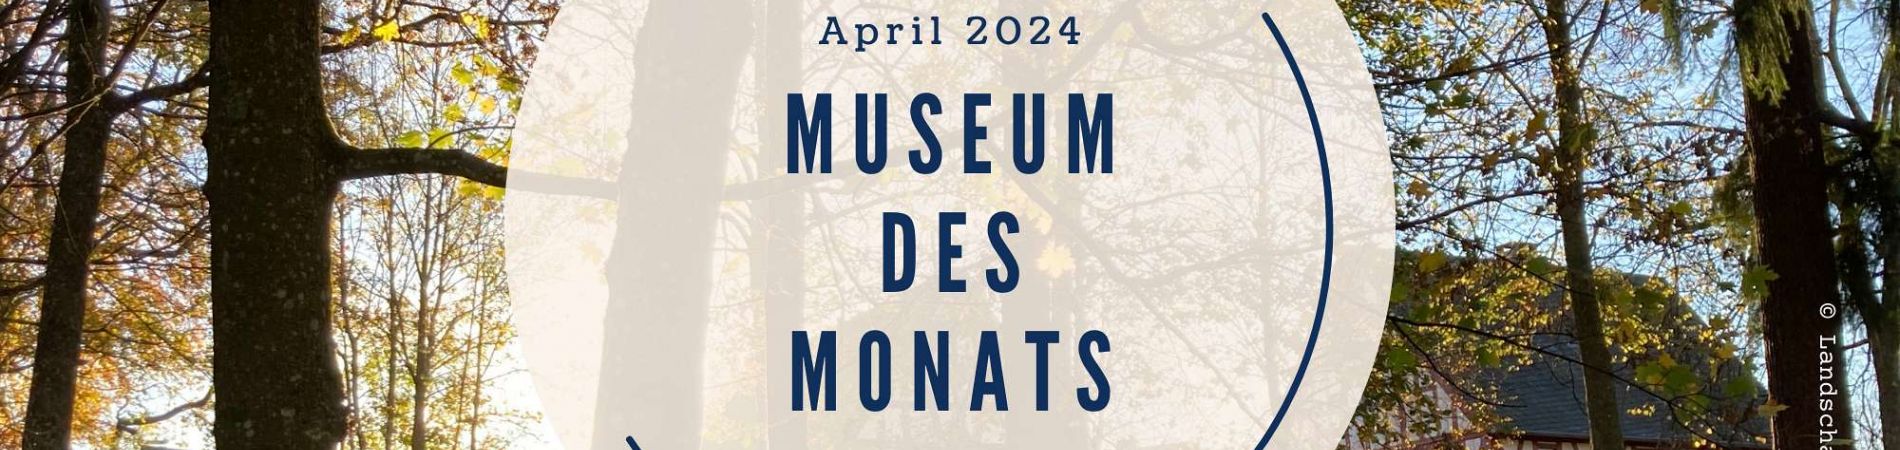 Das Landschaftsmuseum ist Museum des Monats April